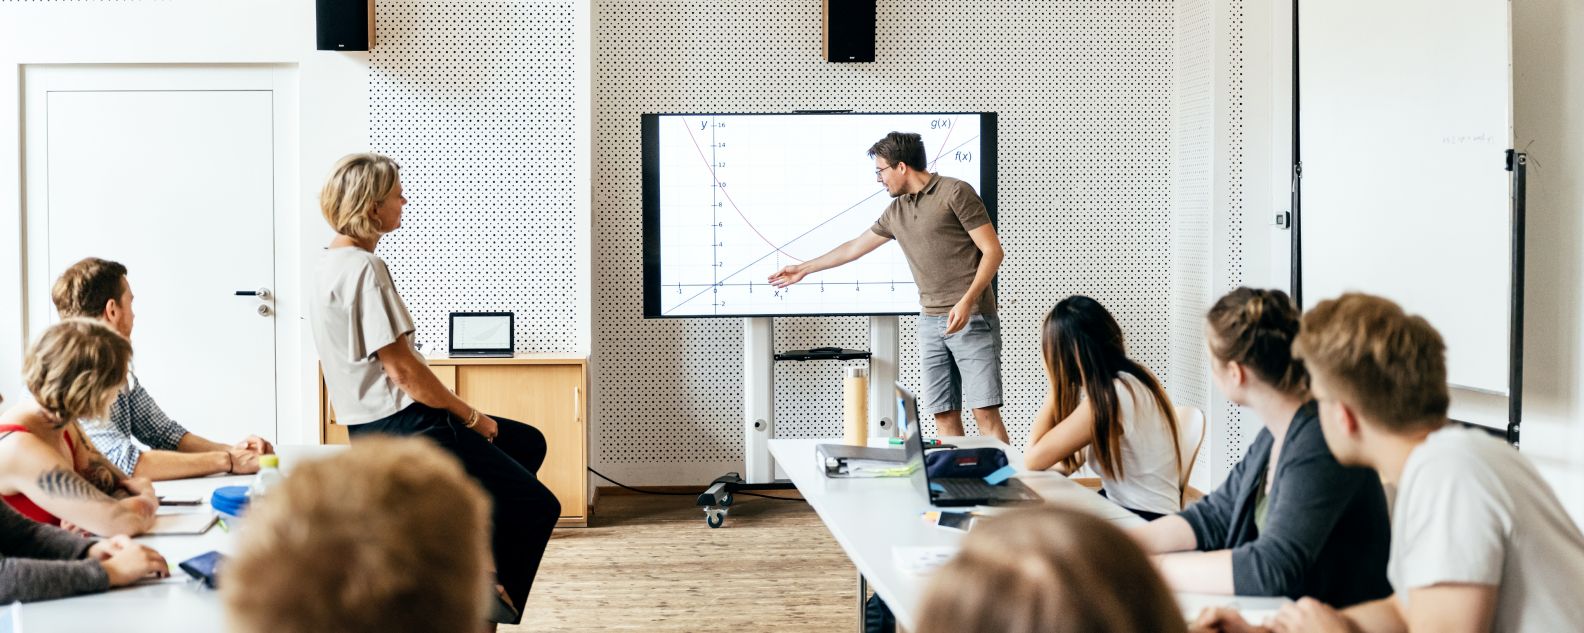 Ein Student hält während einer Seminarsitzung eine Präsentation vor der Klasse und nutzt dabei einen großen Monitor als visuelle Hilfe